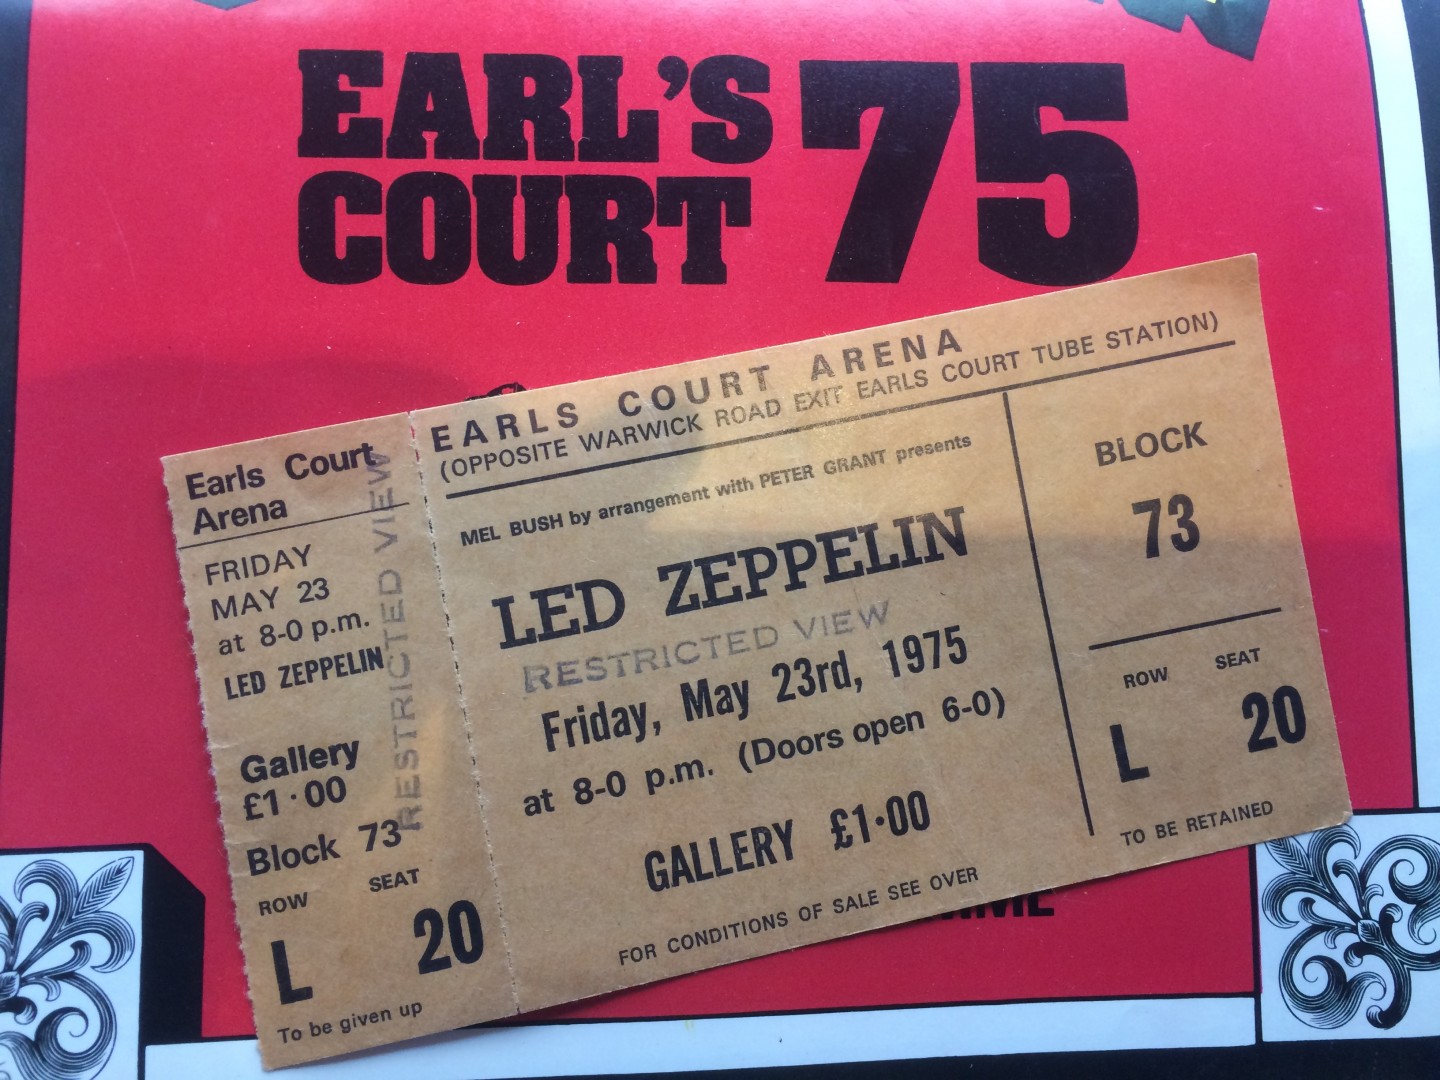 Led Eap at Earl's Court prog n ticket (NCN)